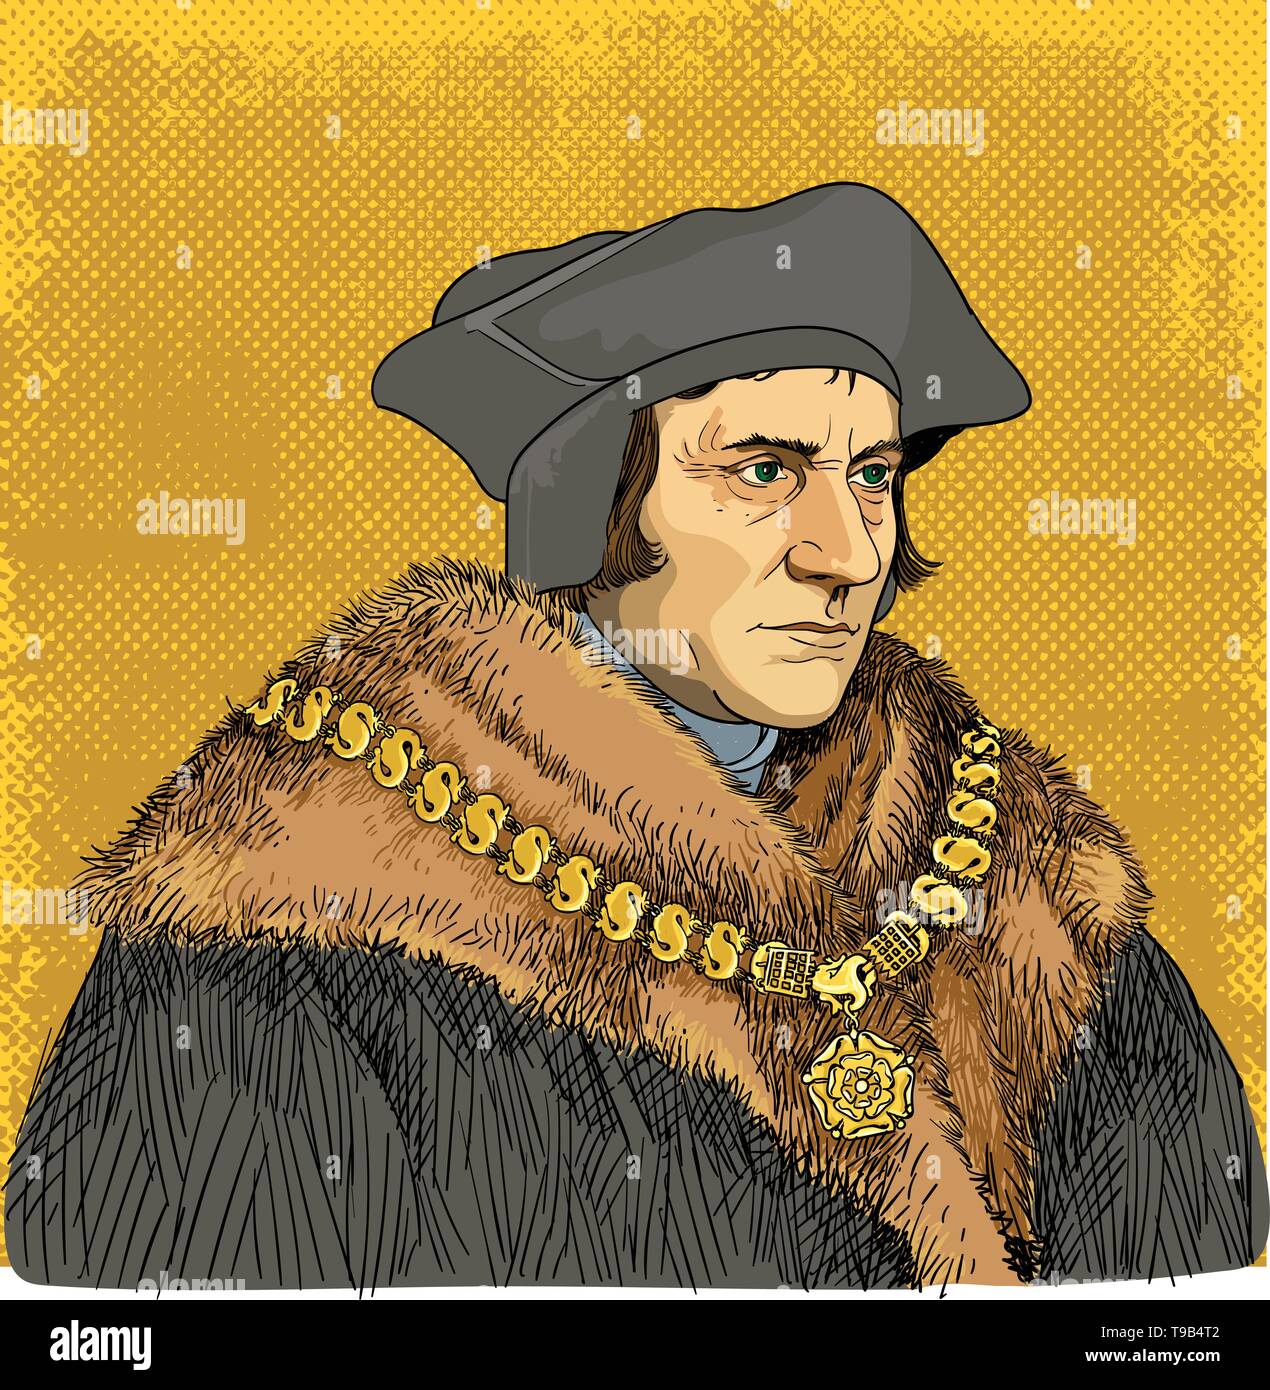 Sir Thomas More Portrait im Einklang Art Illustration. Wpw war ein englischer Anwalt, Philosoph, Autor, Staatsmann und humanist der Renaissance. Stock Vektor